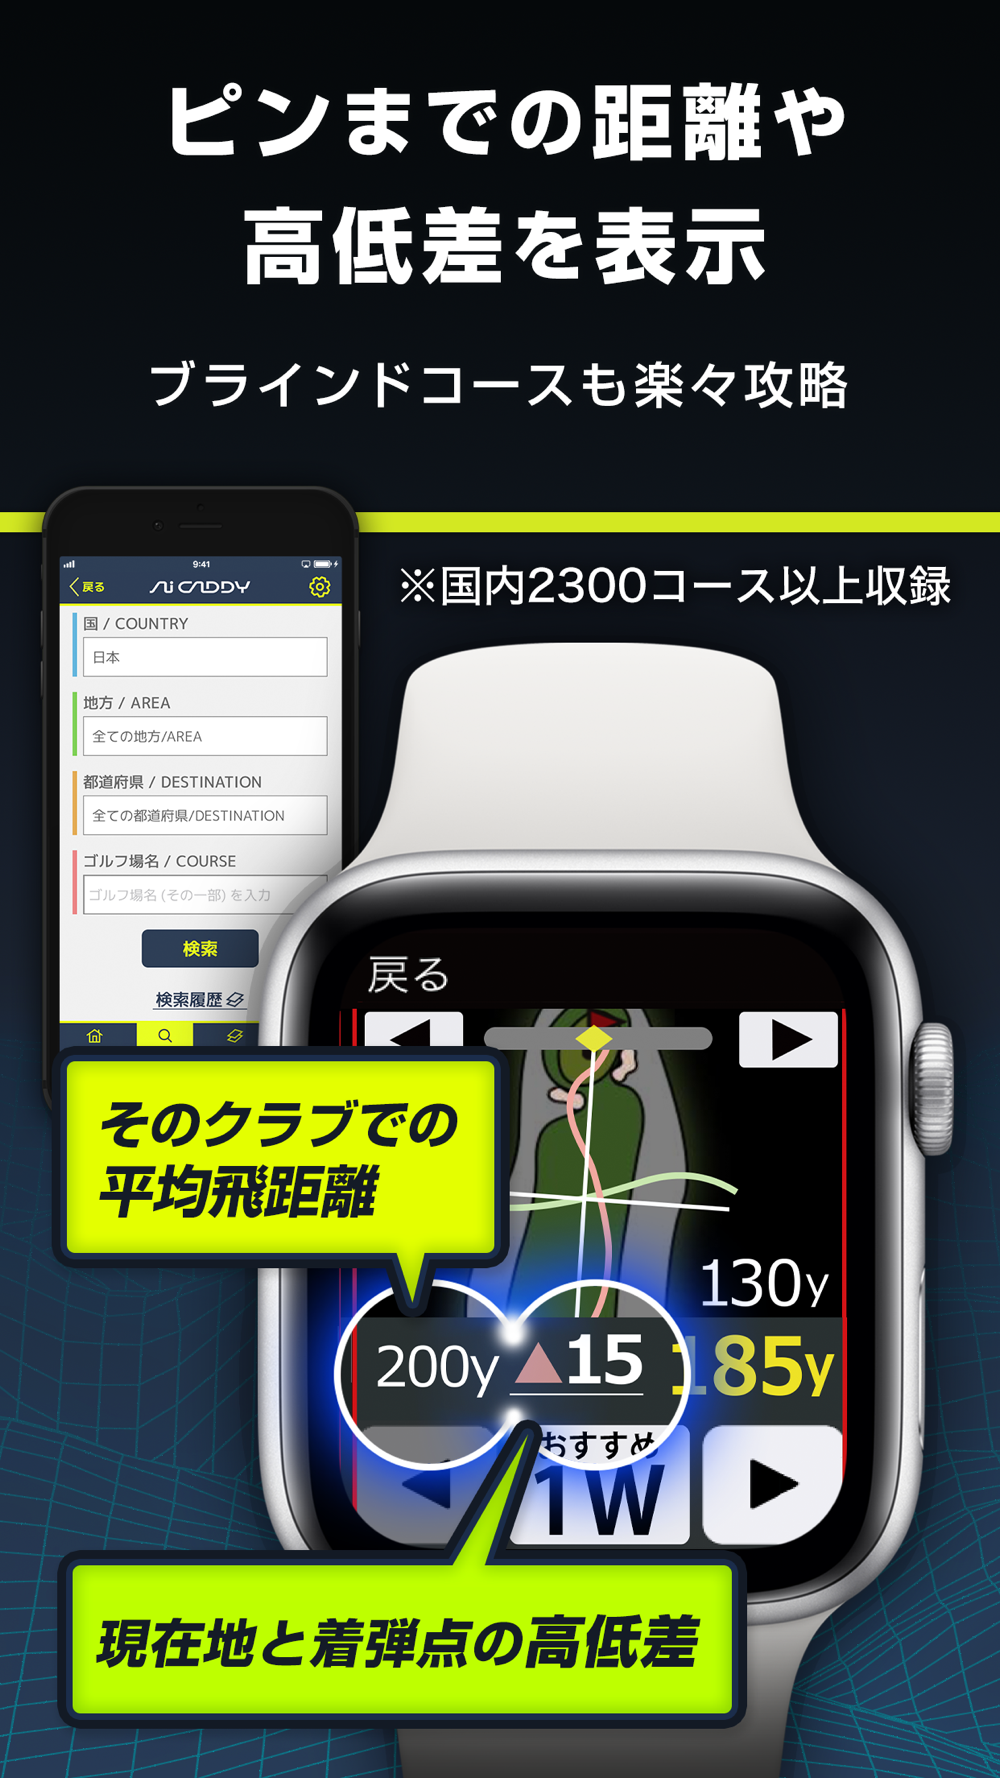 ゴルフ Aiキャディ ゴルフナビ Free Download App For Iphone Steprimo Com